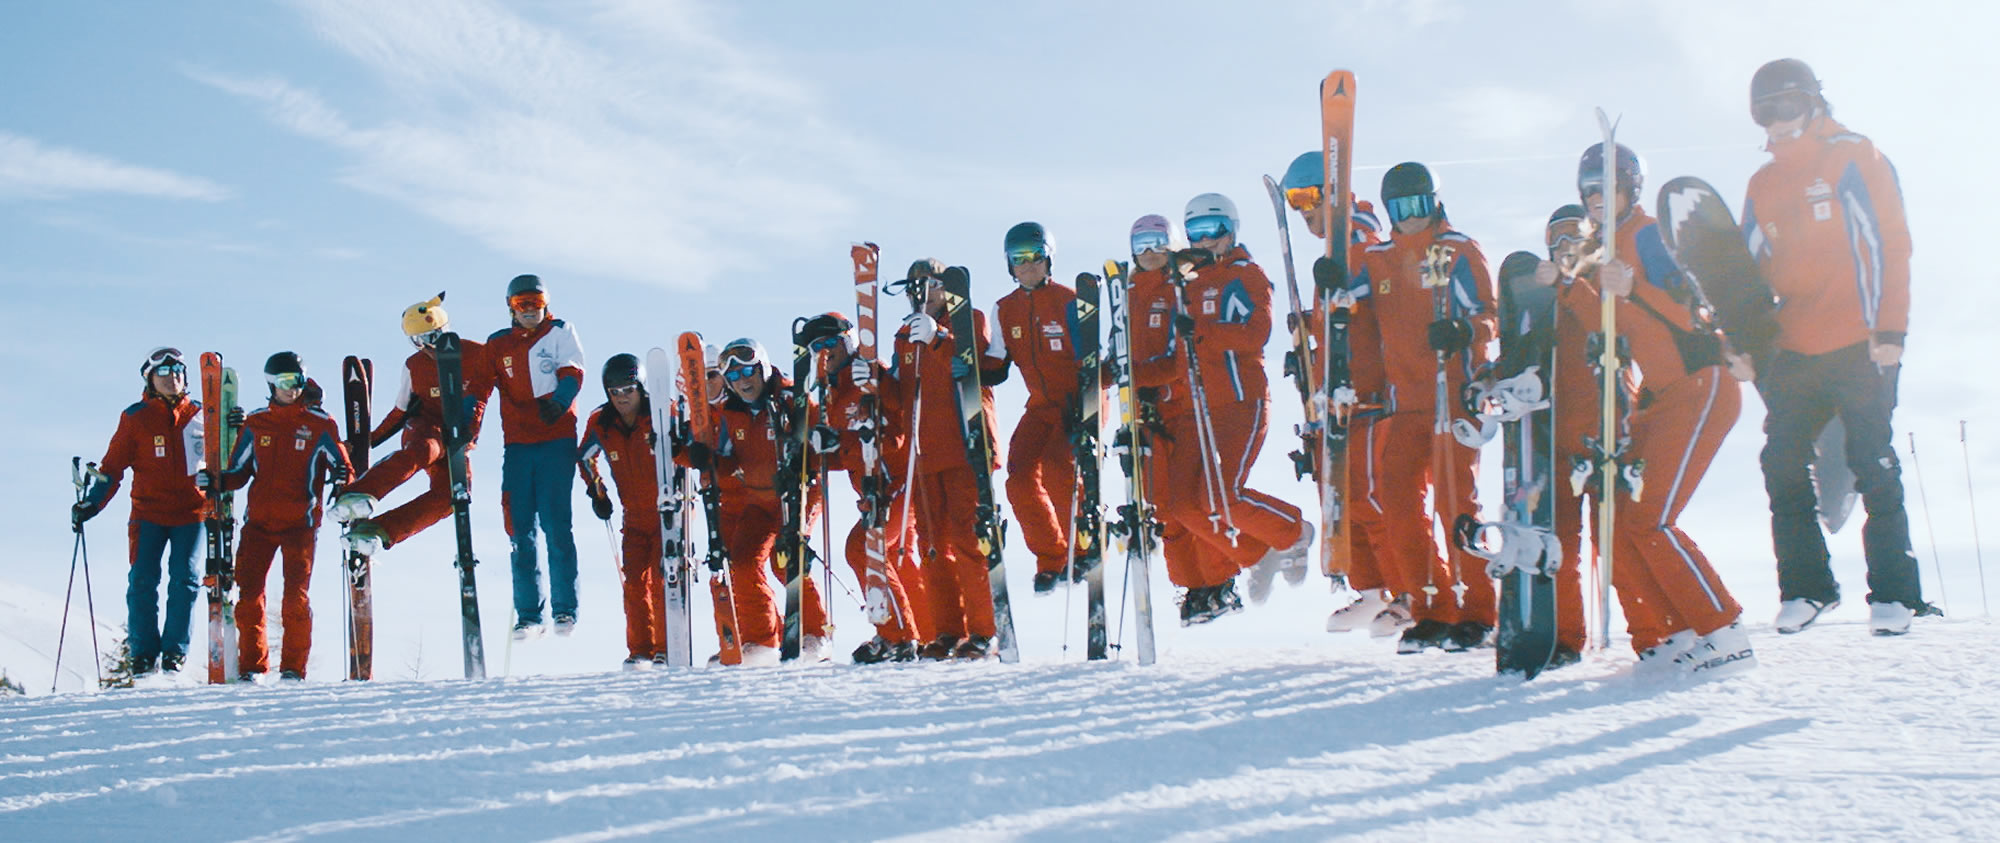 Das ist unser Team der Skischule Hermann Maier